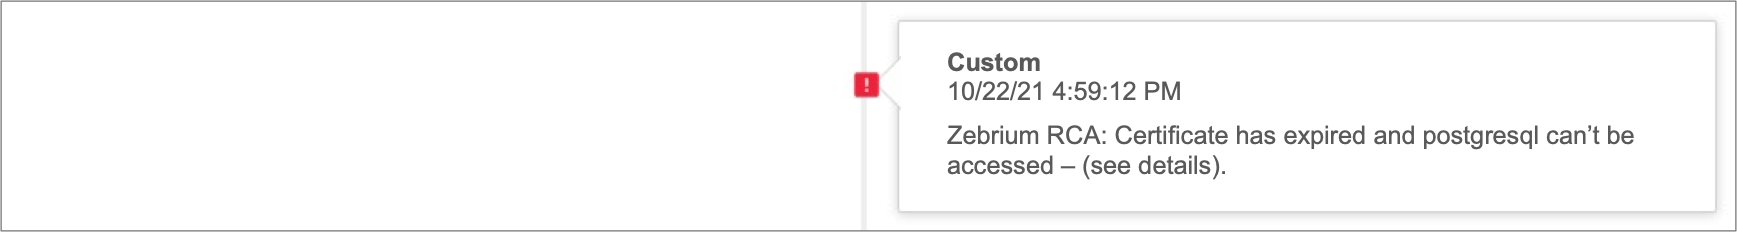 zebrium custom alert